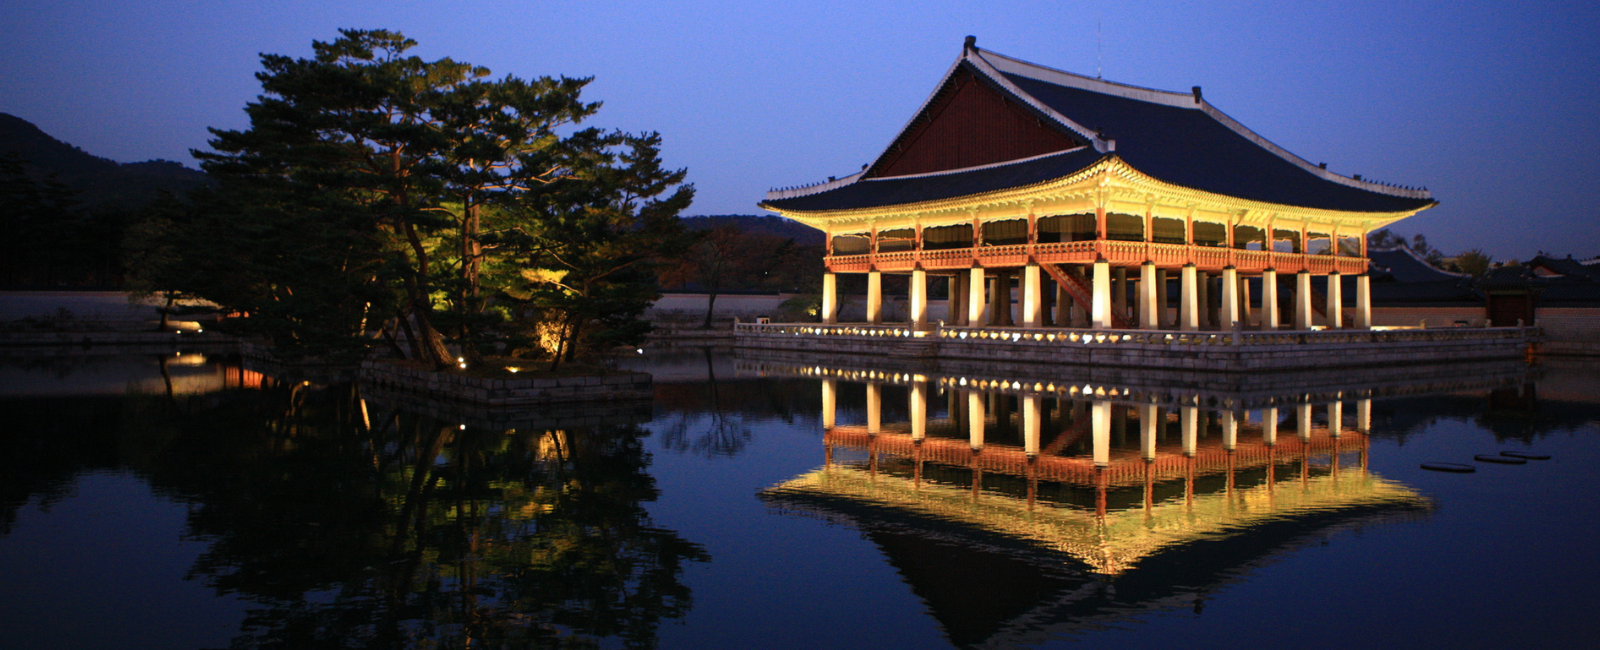 Gyeongbokgung Palace at night